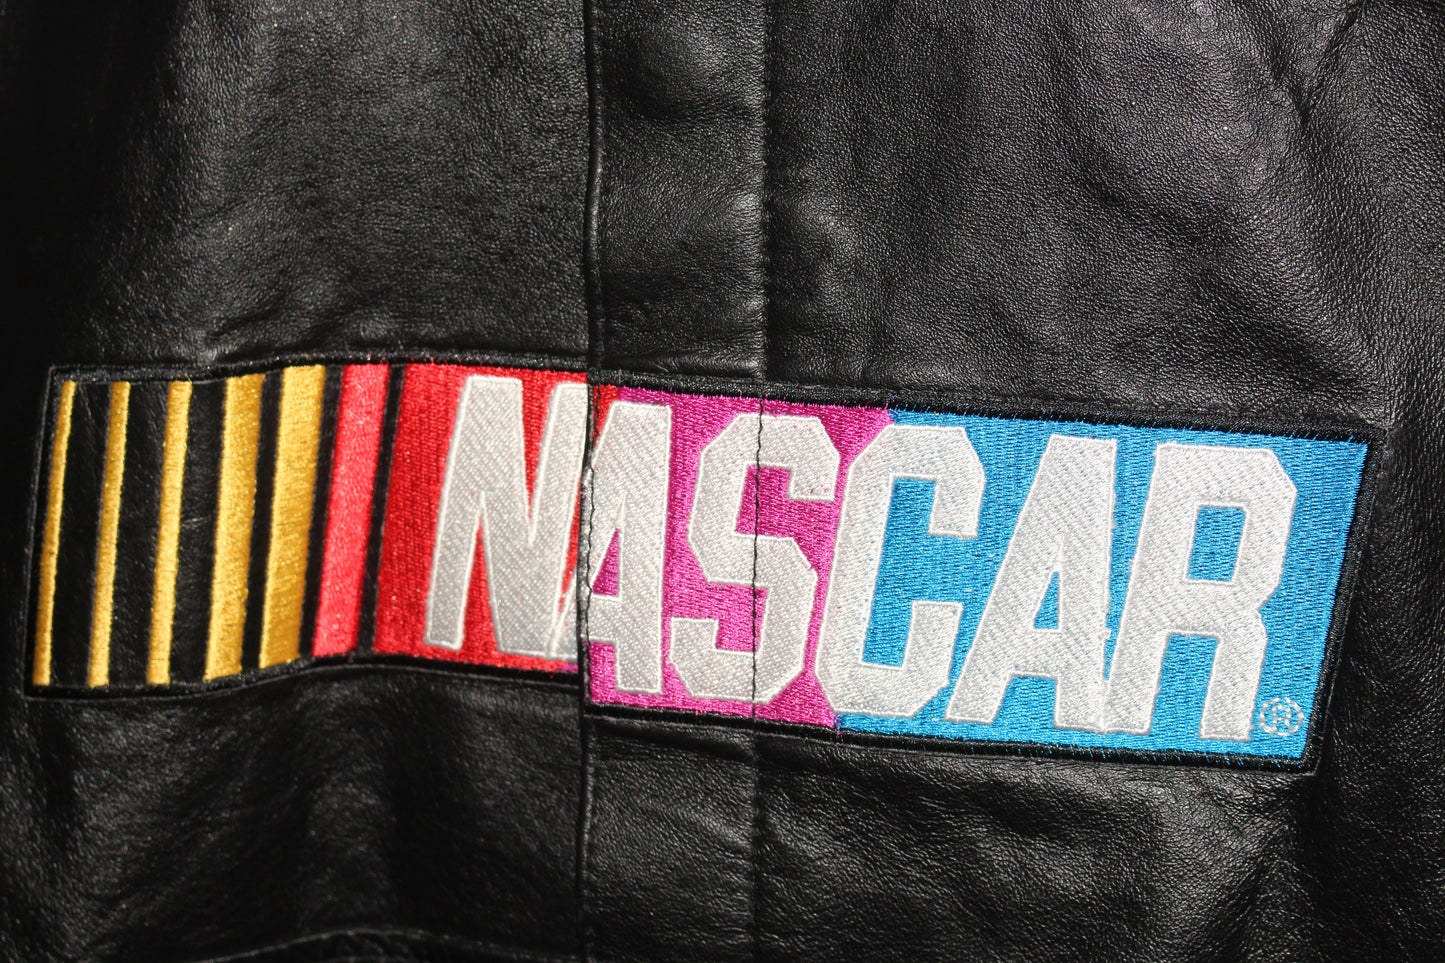 Rare NASCAR Leather Chase Authentics Jacket (XL)